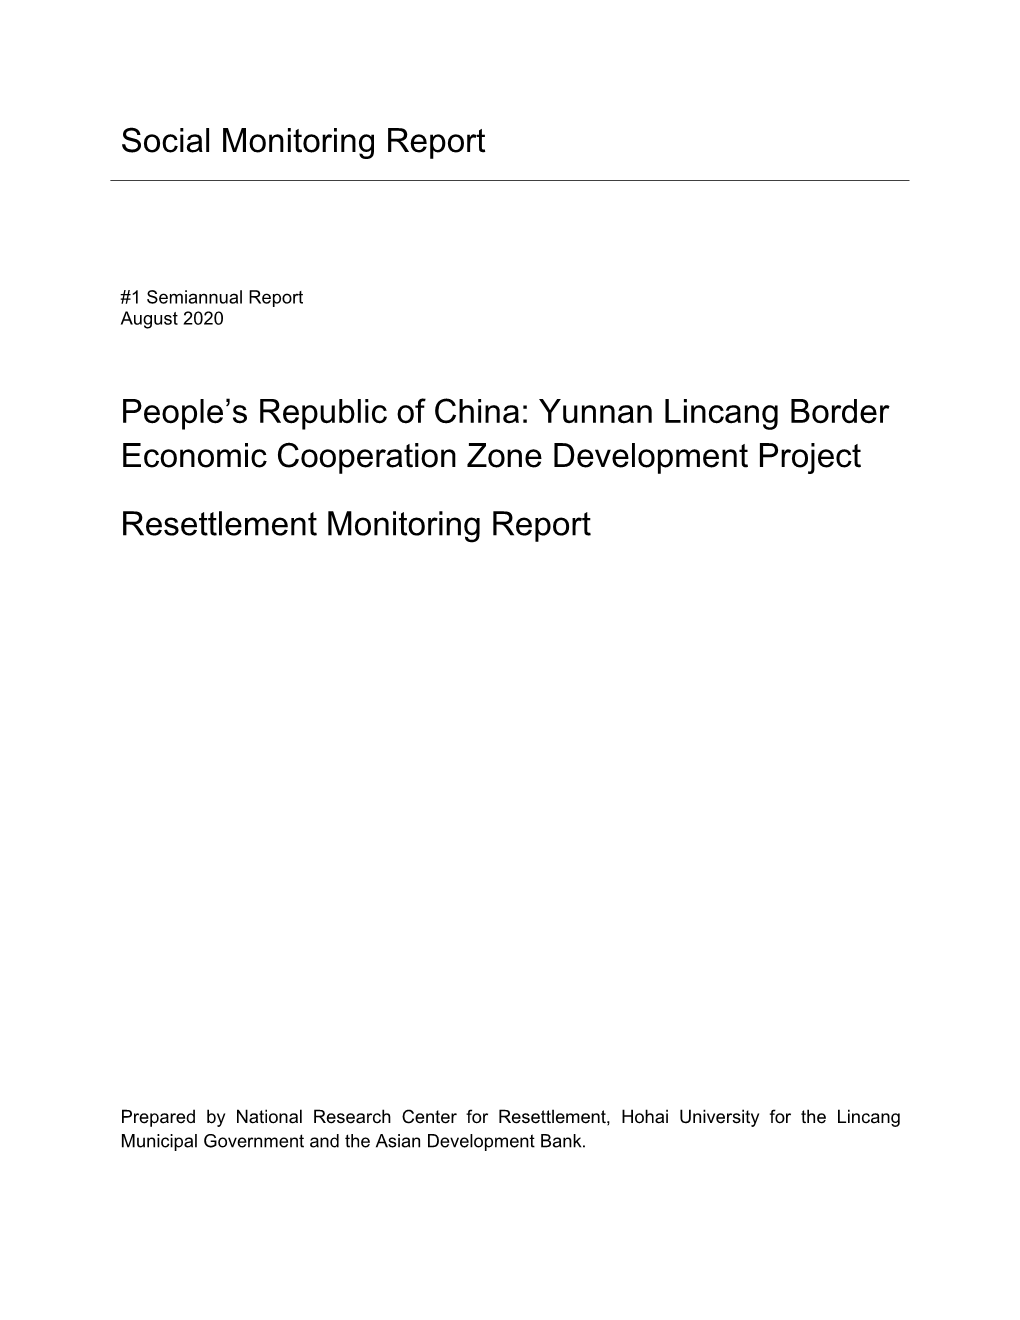 Social Monitoring Report People's Republic of China: Yunnan